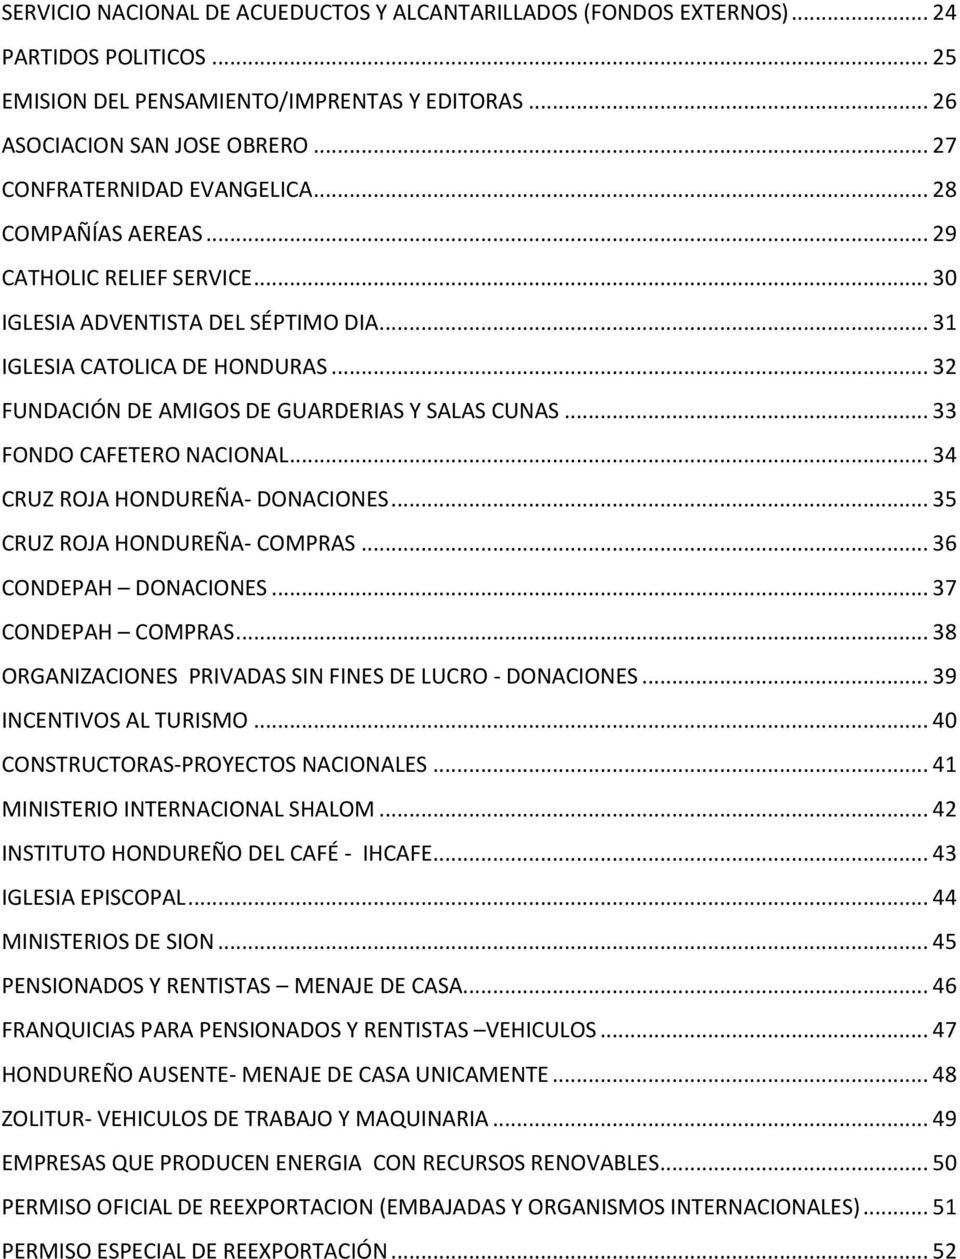 .. 32 FUNDACIÓN DE AMIGOS DE GUARDERIAS Y SALAS CUNAS... 33 FONDO CAFETERO NACIONAL... 34 CRUZ ROJA HONDUREÑA- DONACIONES... 35 CRUZ ROJA HONDUREÑA- COMPRAS... 36 CONDEPAH DONACIONES.